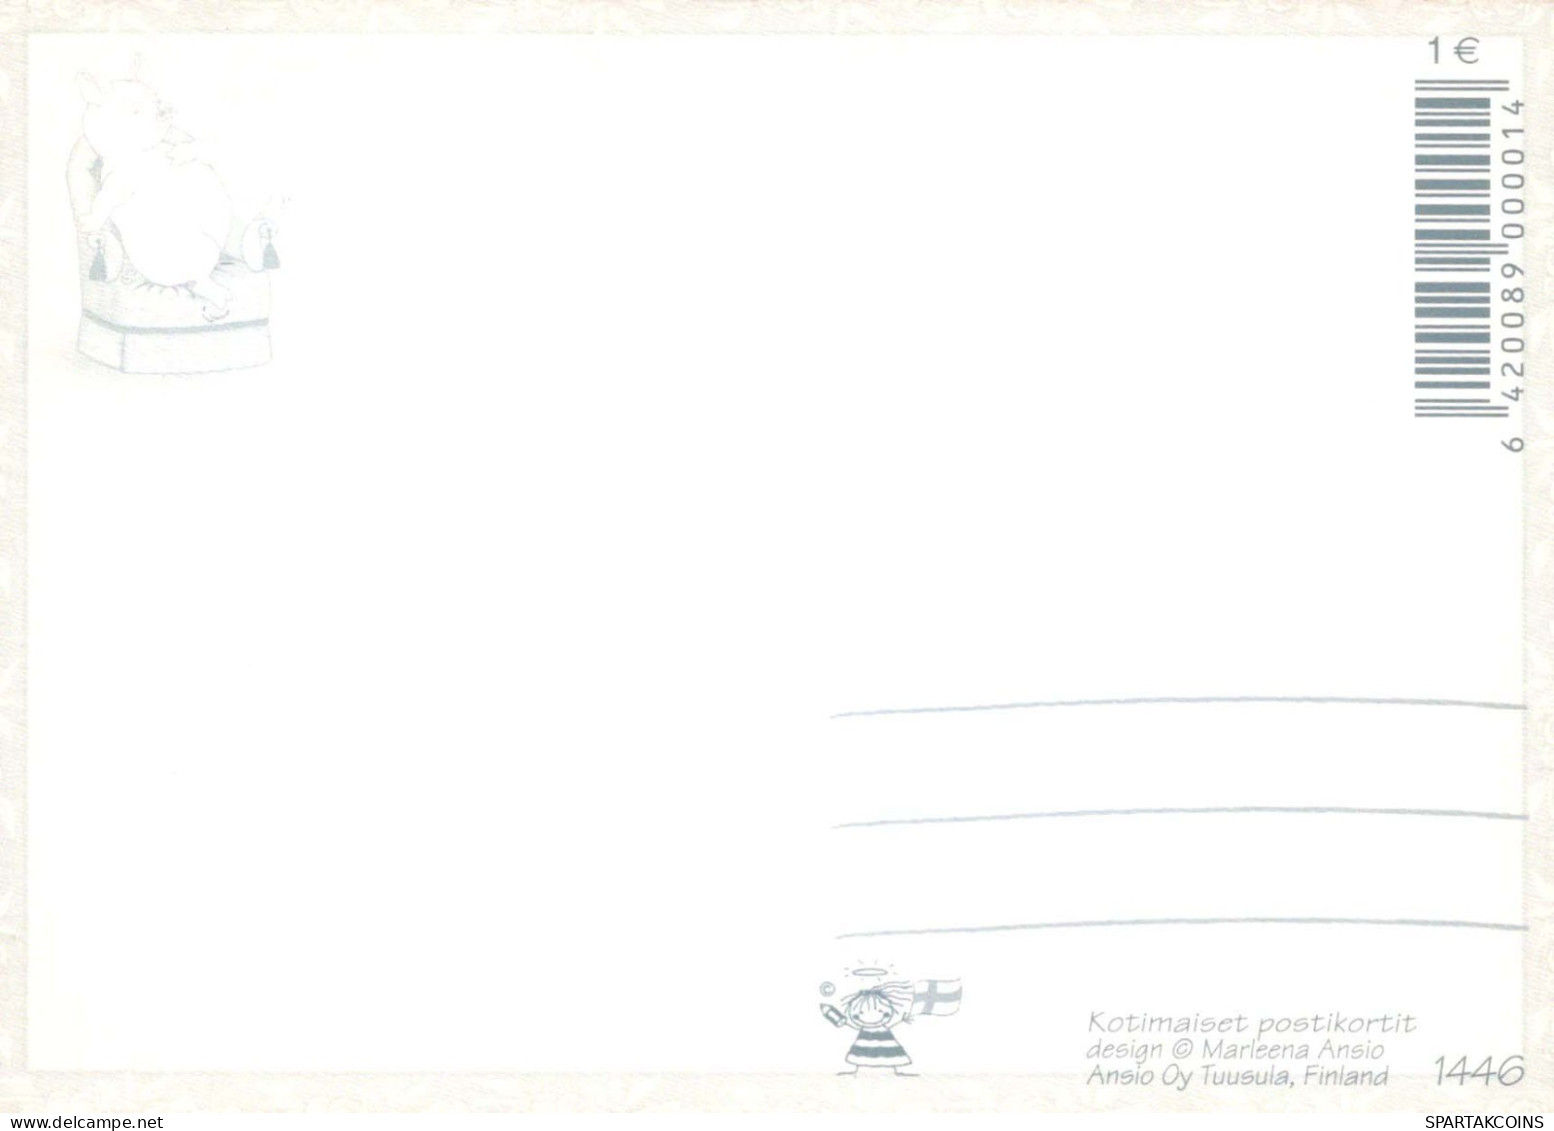 CERDOS Animales Vintage Tarjeta Postal CPSM #PBR745.A - Schweine